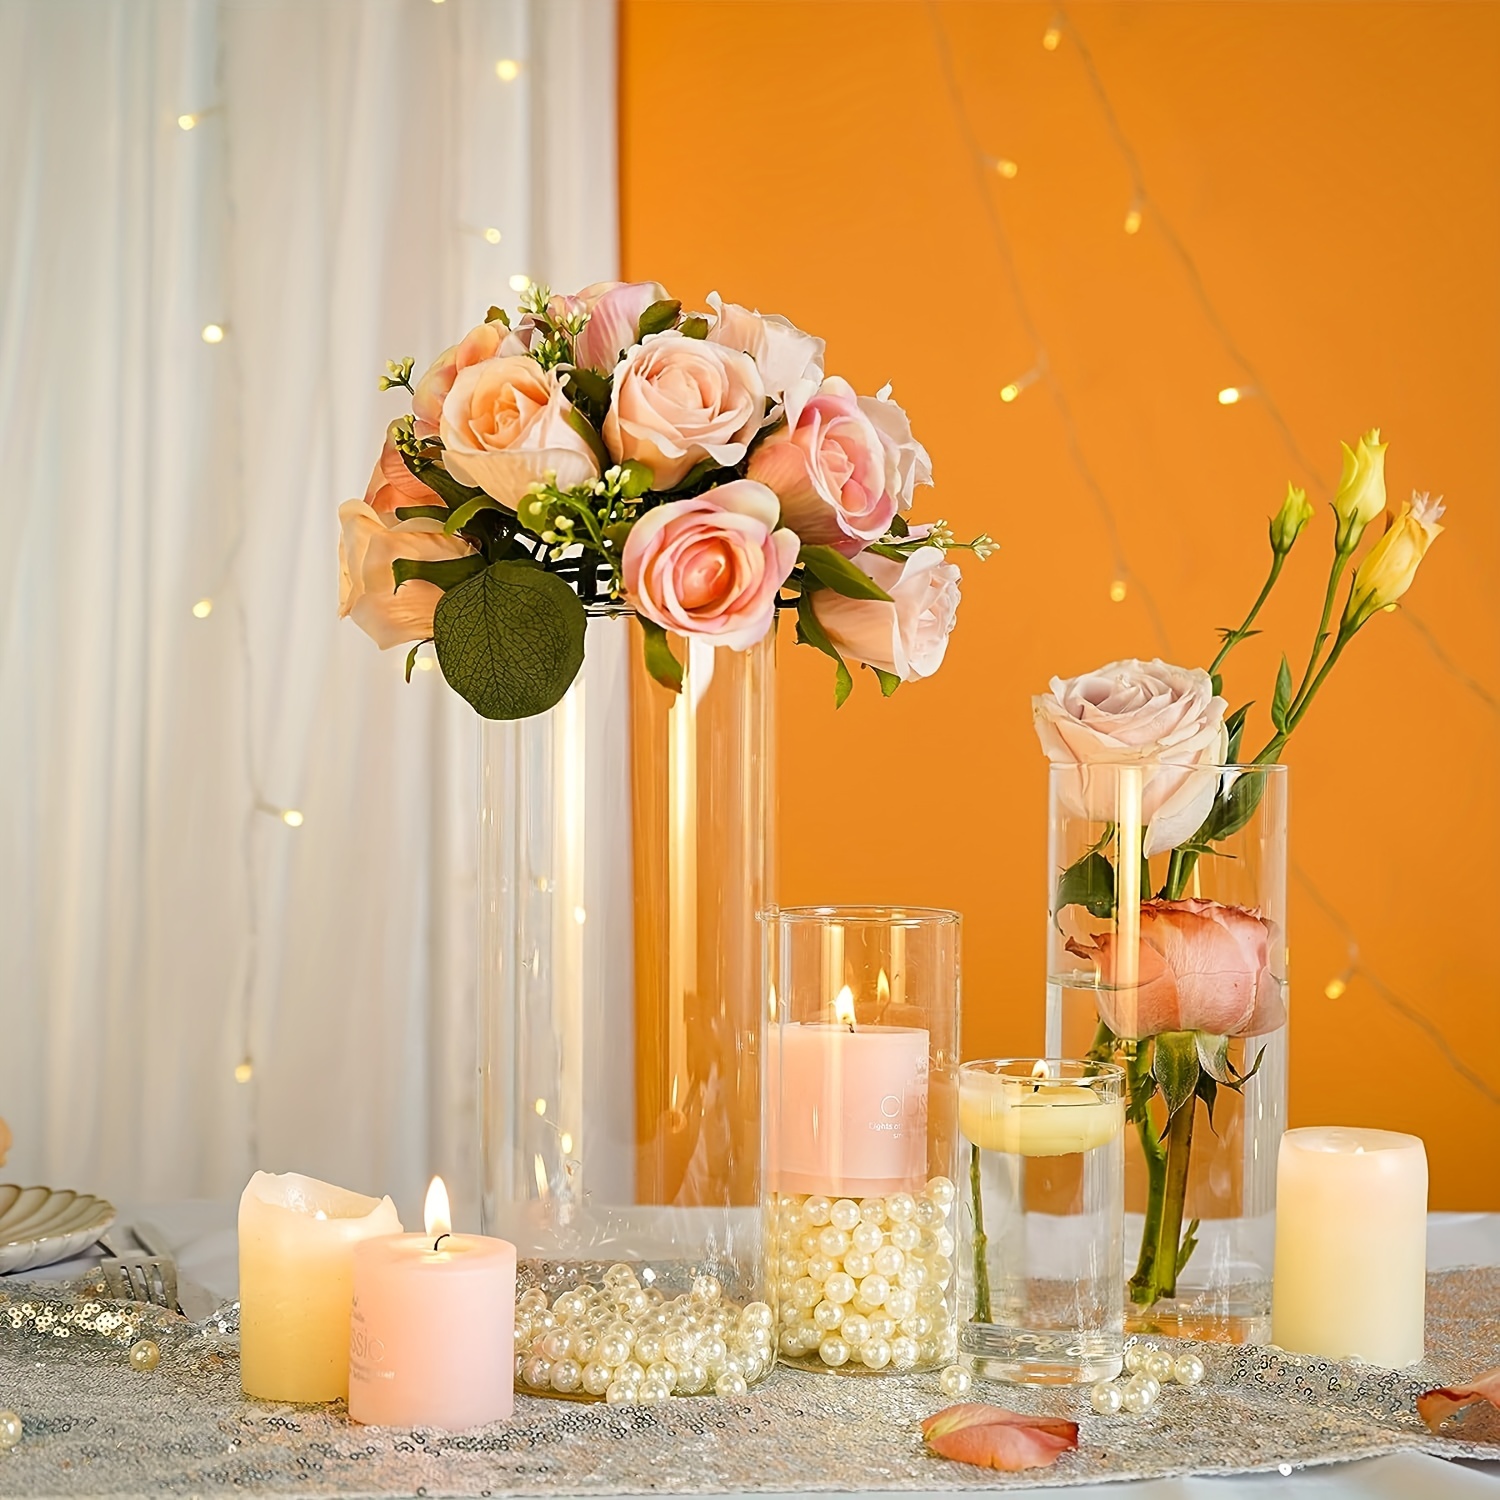 Portacandele da tavolo in vetro o vasi da tavolo per fiori con tracciato di  ritaglio